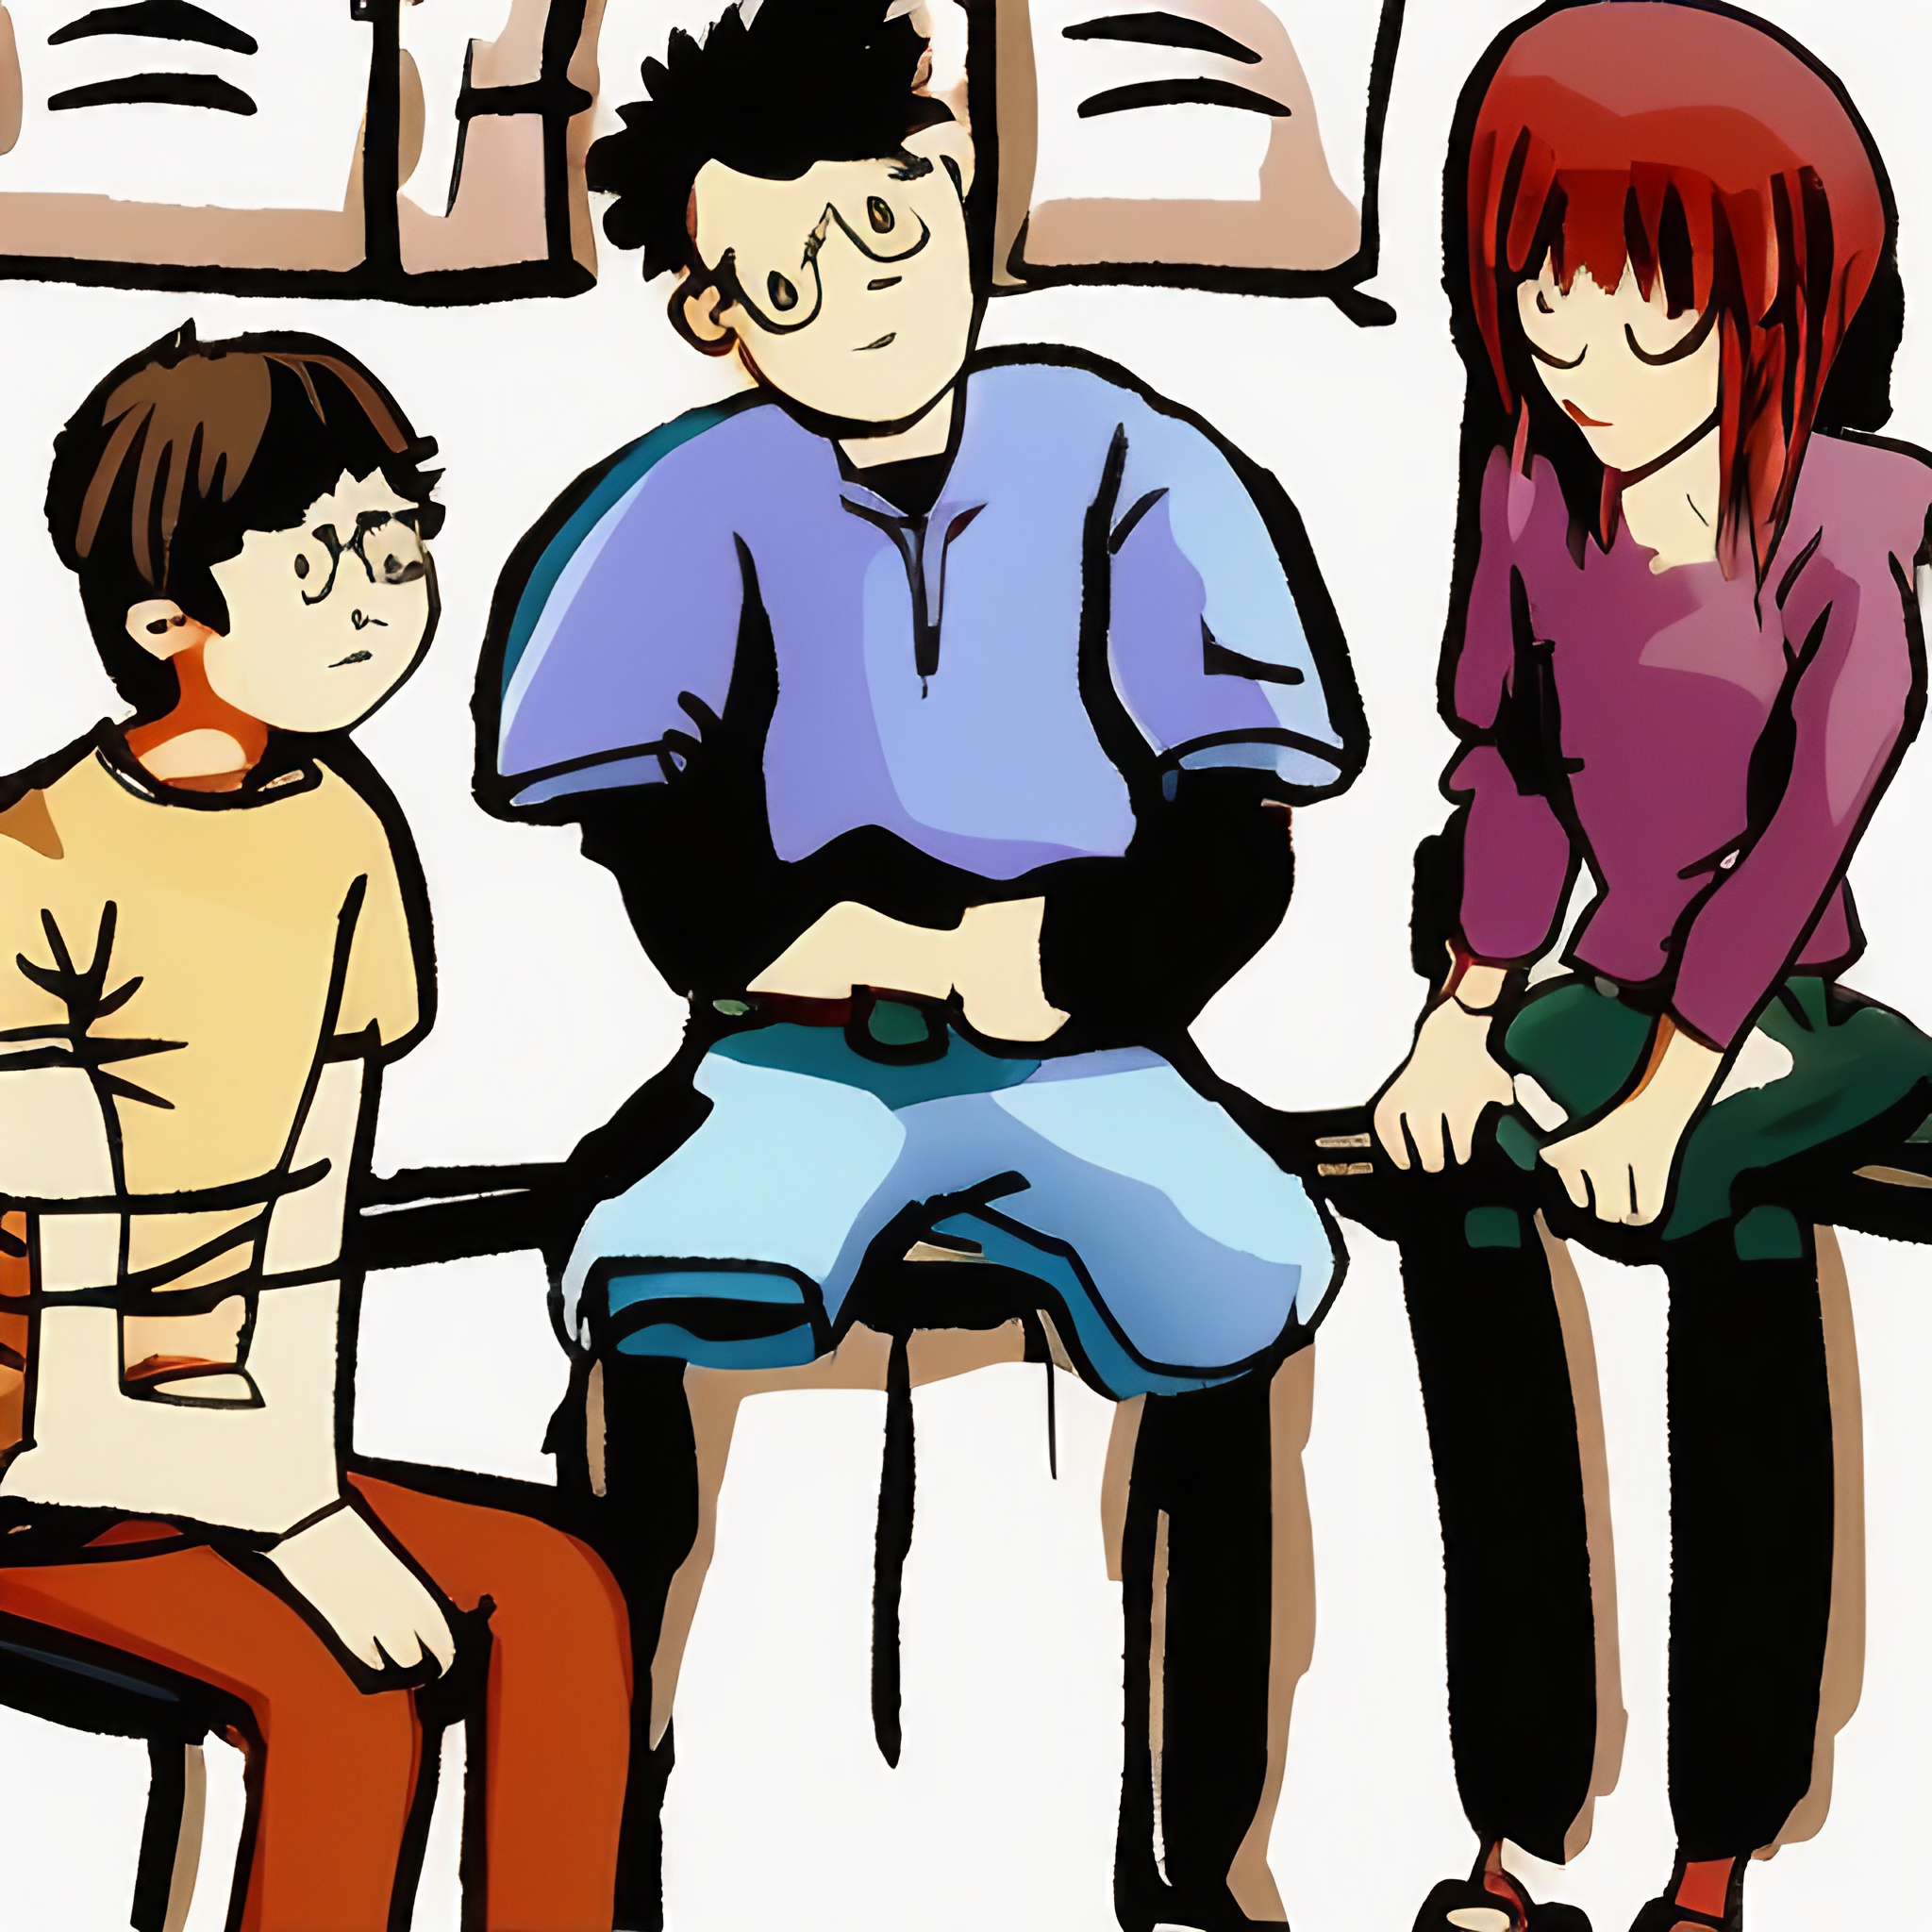 grafika w stylu kreskówkowym na grafice wydać rodziców rozmawiających z nastoletnim synem siedzącym na łóżku